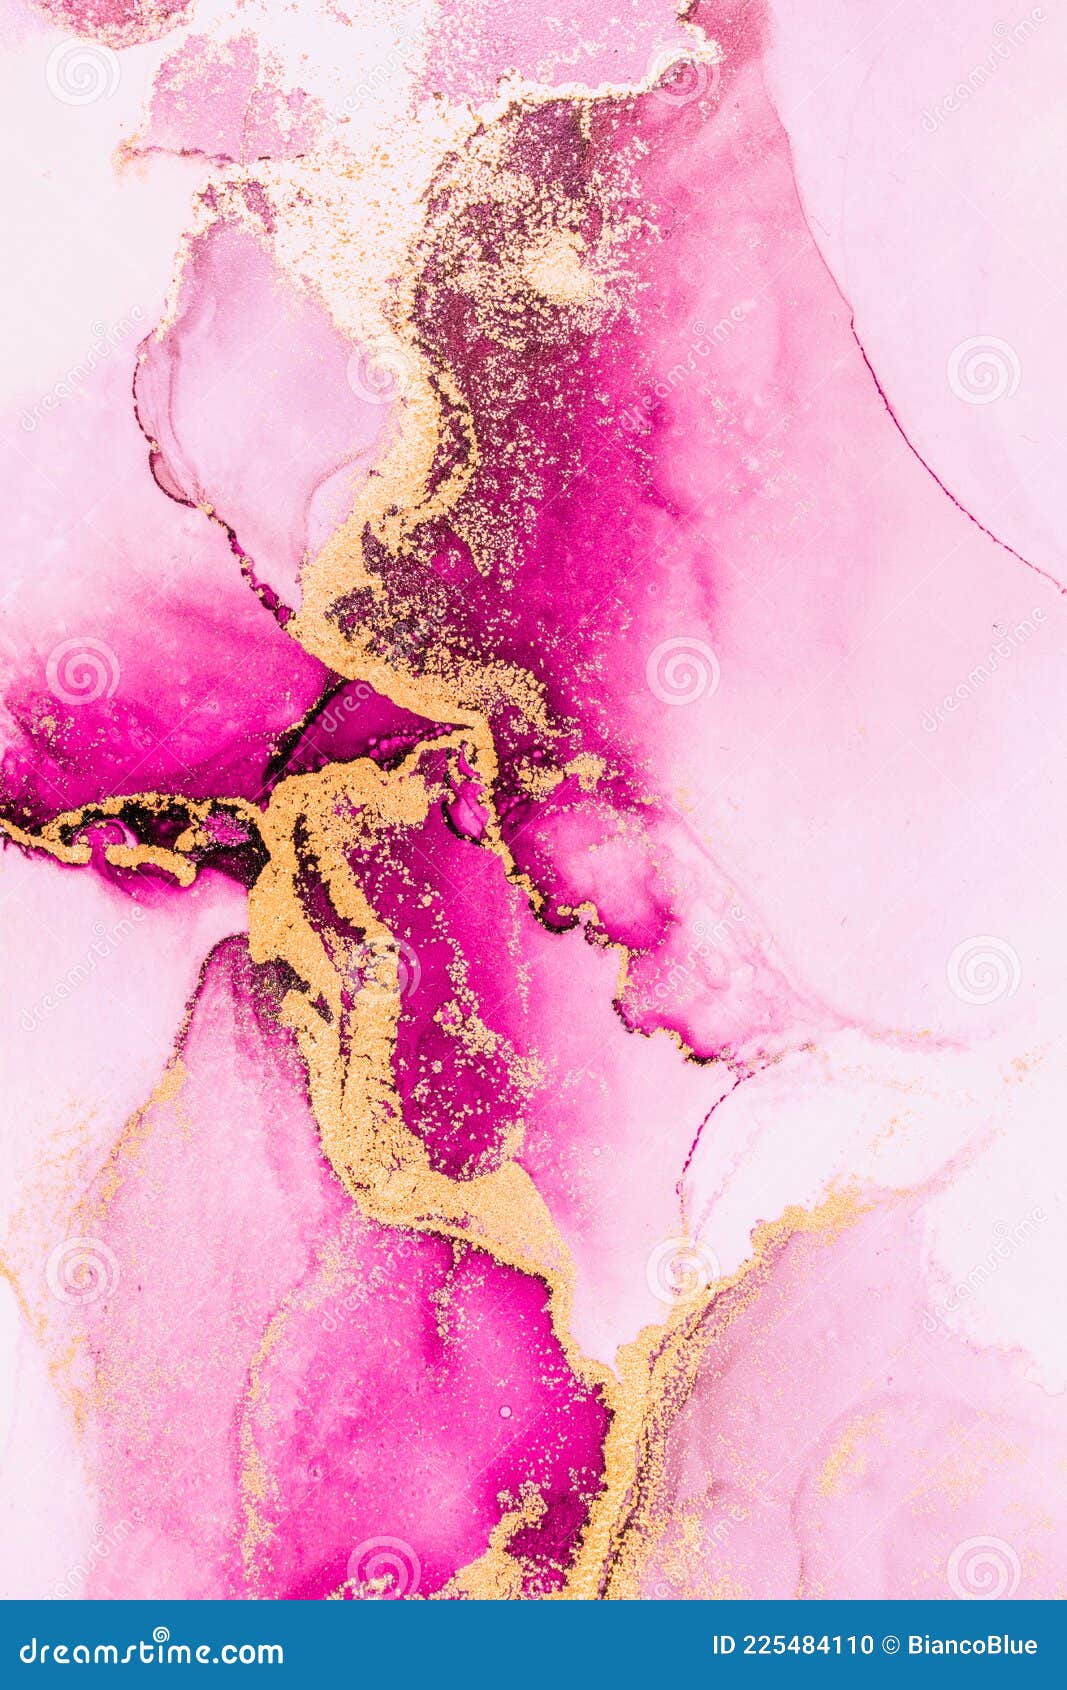 Màu hồng đem lại cảm giác ngọt ngào và nữ tính, chính vì điều đó mà màu hồng thường được sử dụng trong tranh vẽ. Nếu bạn muốn tìm hiểu thêm về cách sử dụng màu hồng trong tranh vẽ, hãy xem thêm hình ảnh liên quan đến đề tài này.